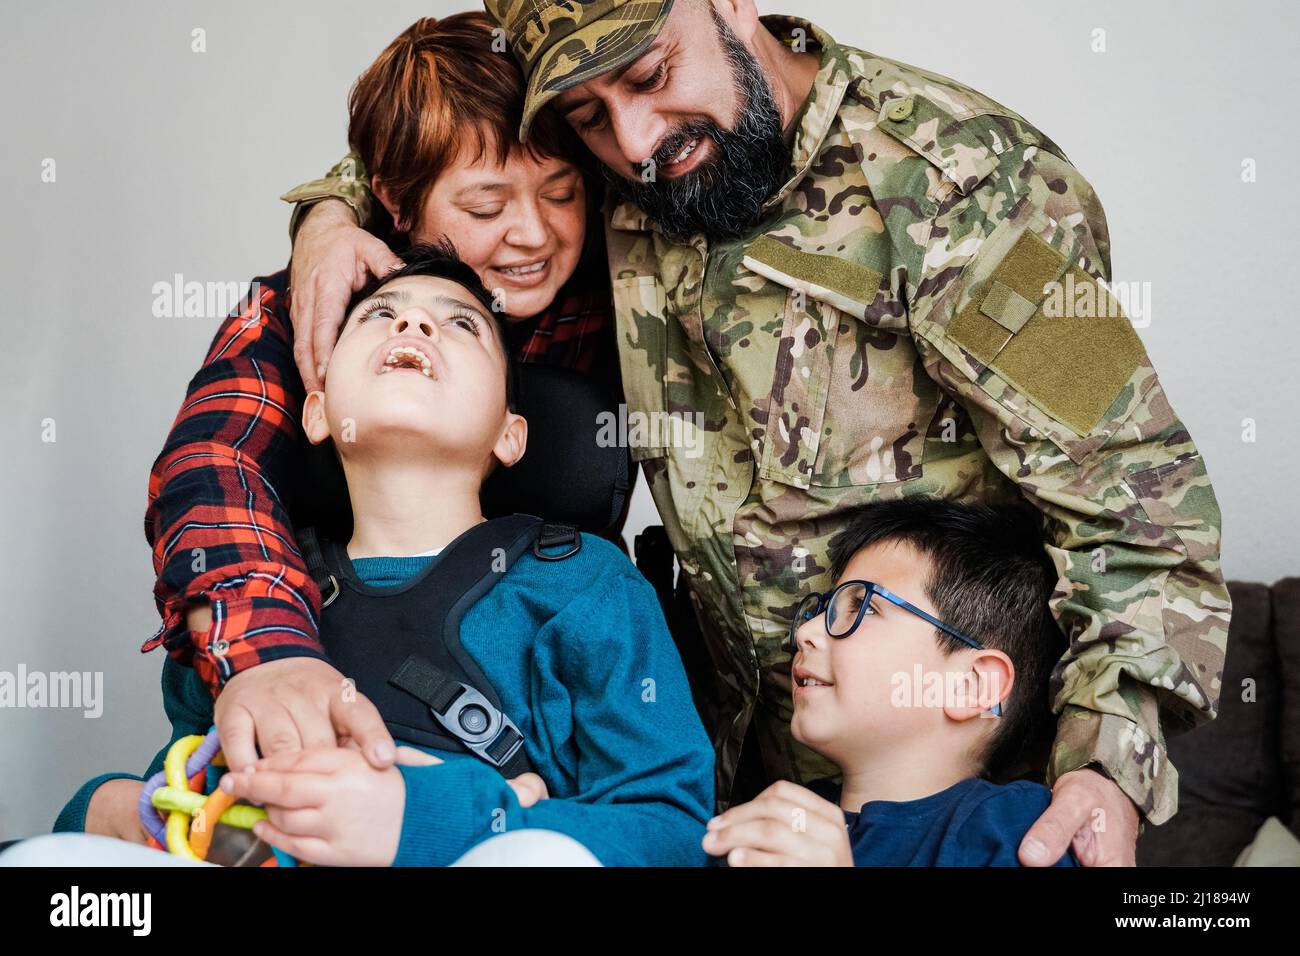 Glücklicher Militärsoldat, der nach der Heimkehr einen zarten Moment mit der Familie hat - Liebe und Kriegskonzepte - Konzentrieren Sie sich auf das Gesicht eines Veteranen Stockfoto